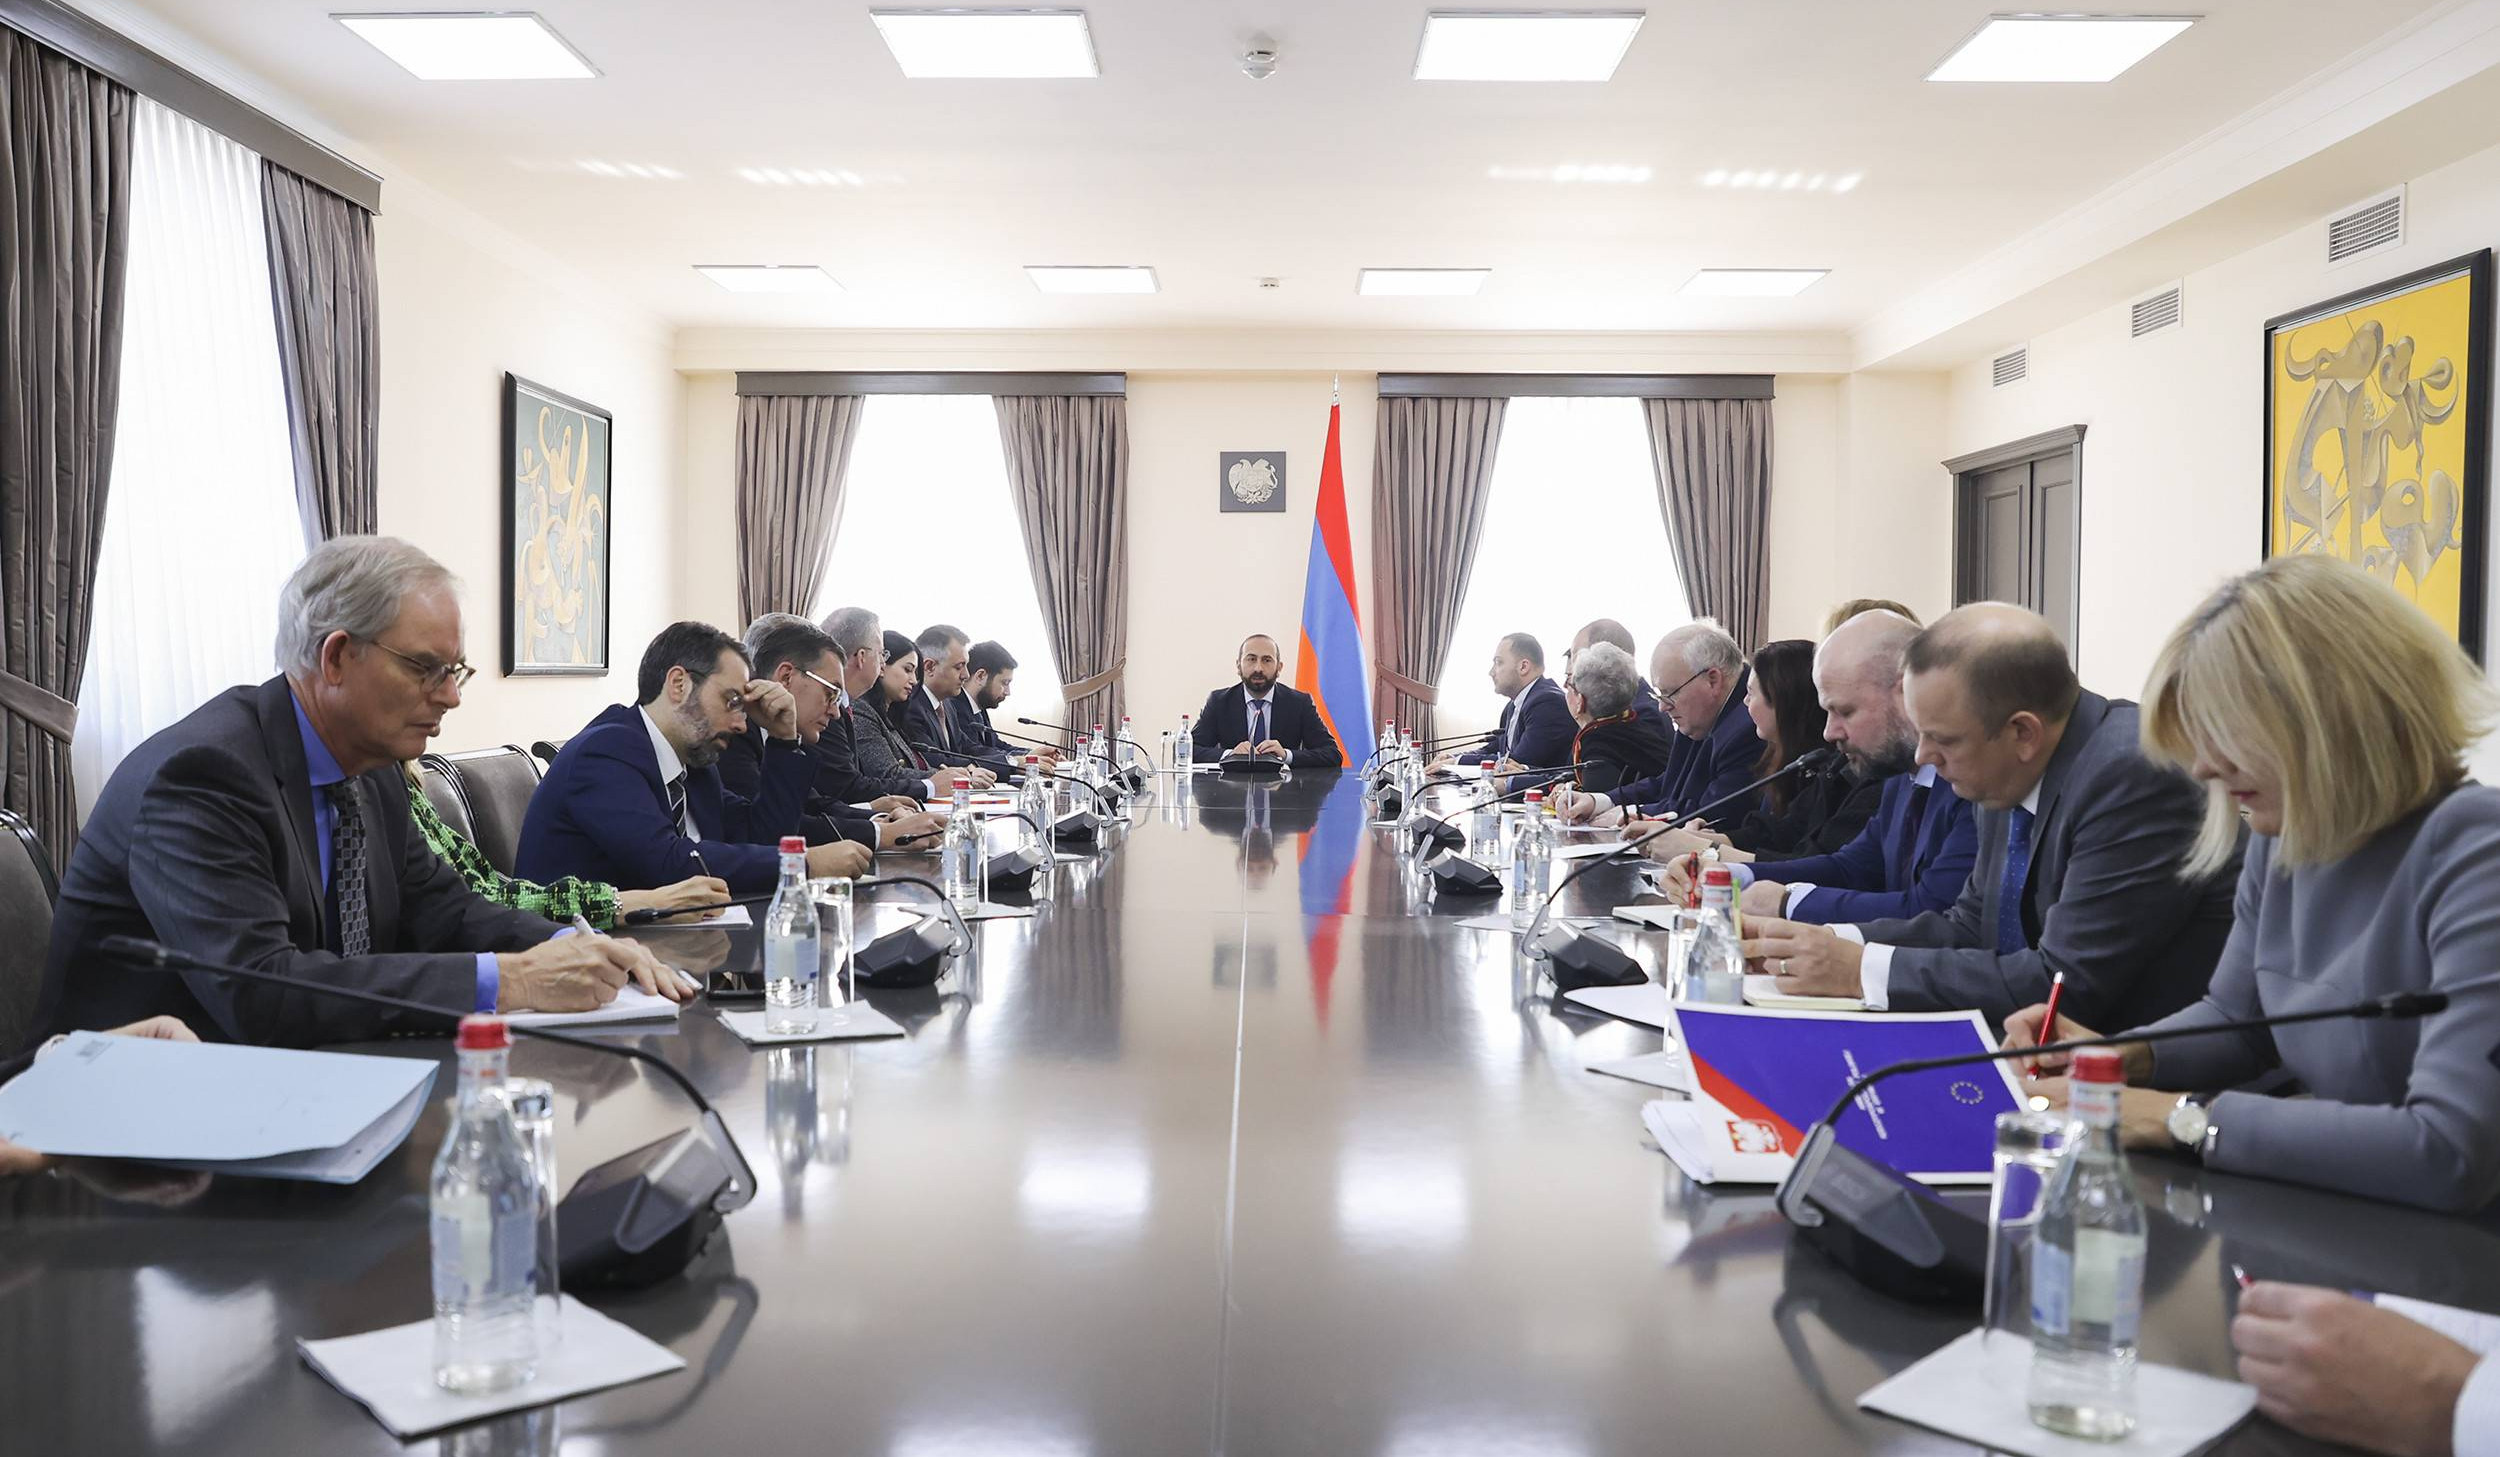 Глава МИД представил позицию армянской стороны по Нагорно-Карабахскому вопросу спецпредставителям ЕС и стран-членов ЕС